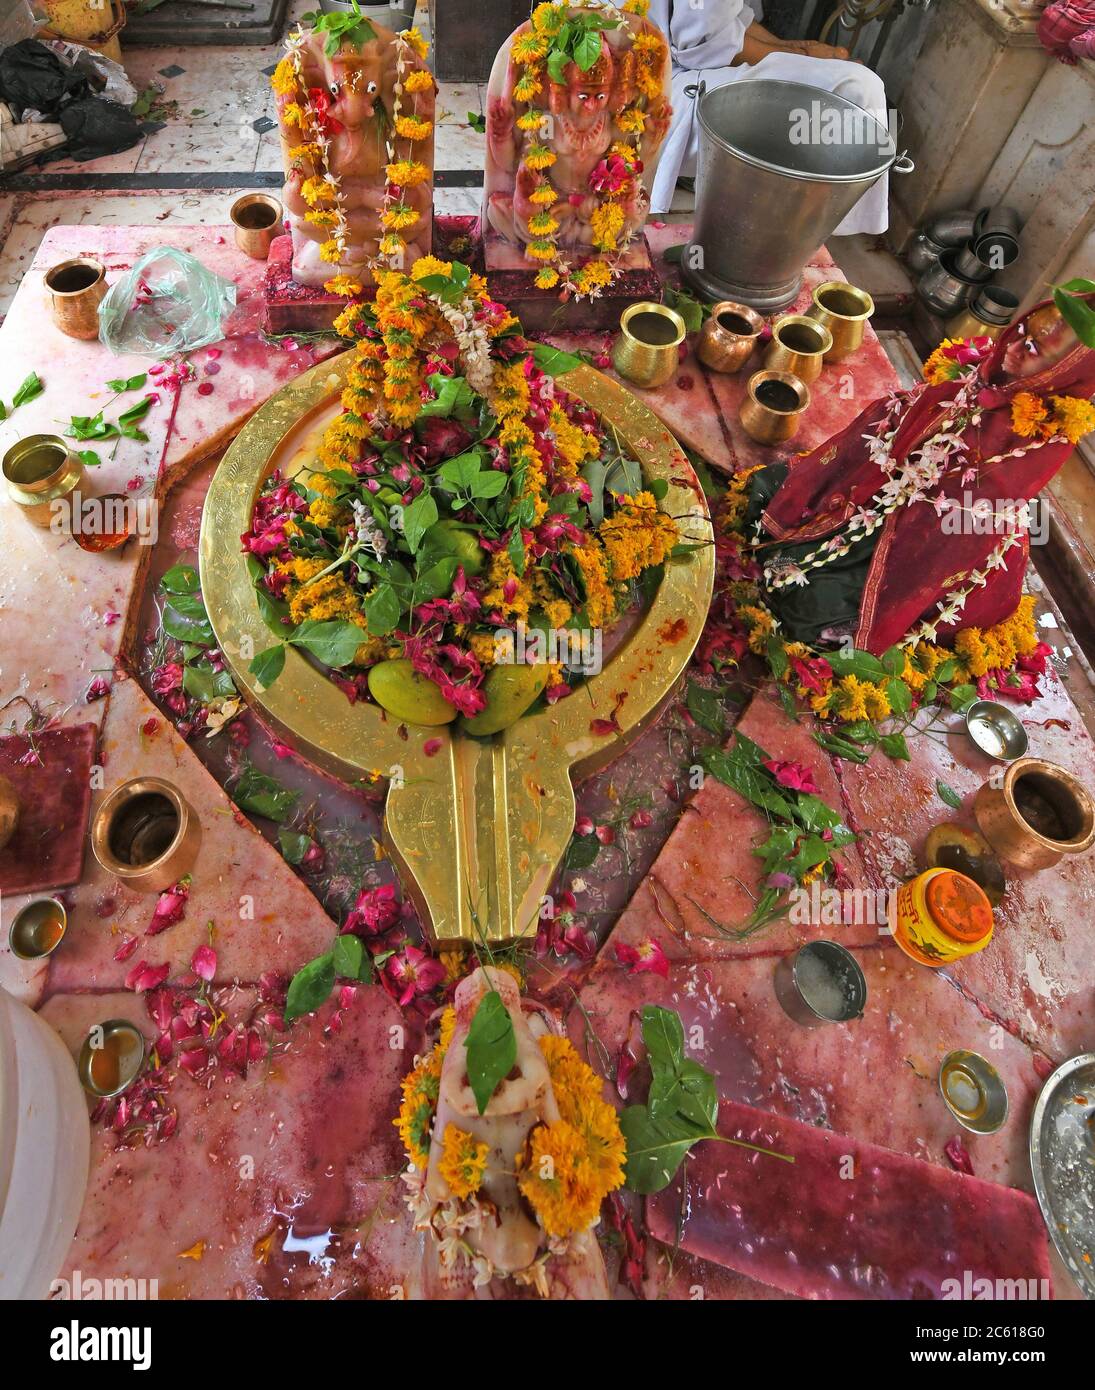 Beawar, Rajasthan, Indien, 6. Juli 2020: Lord Shiva Lingam, eine Steinskulptur, die den Phallus des Hindu-Gottes Shiva, auf dem ersten Somwar (Montag) des heiligen Monats von Shravan oder Sawan am Mahadev Tempel in Beawar darstellt. Kredit: Sumit Saraswat/Alamy Live Nachrichten Stockfoto